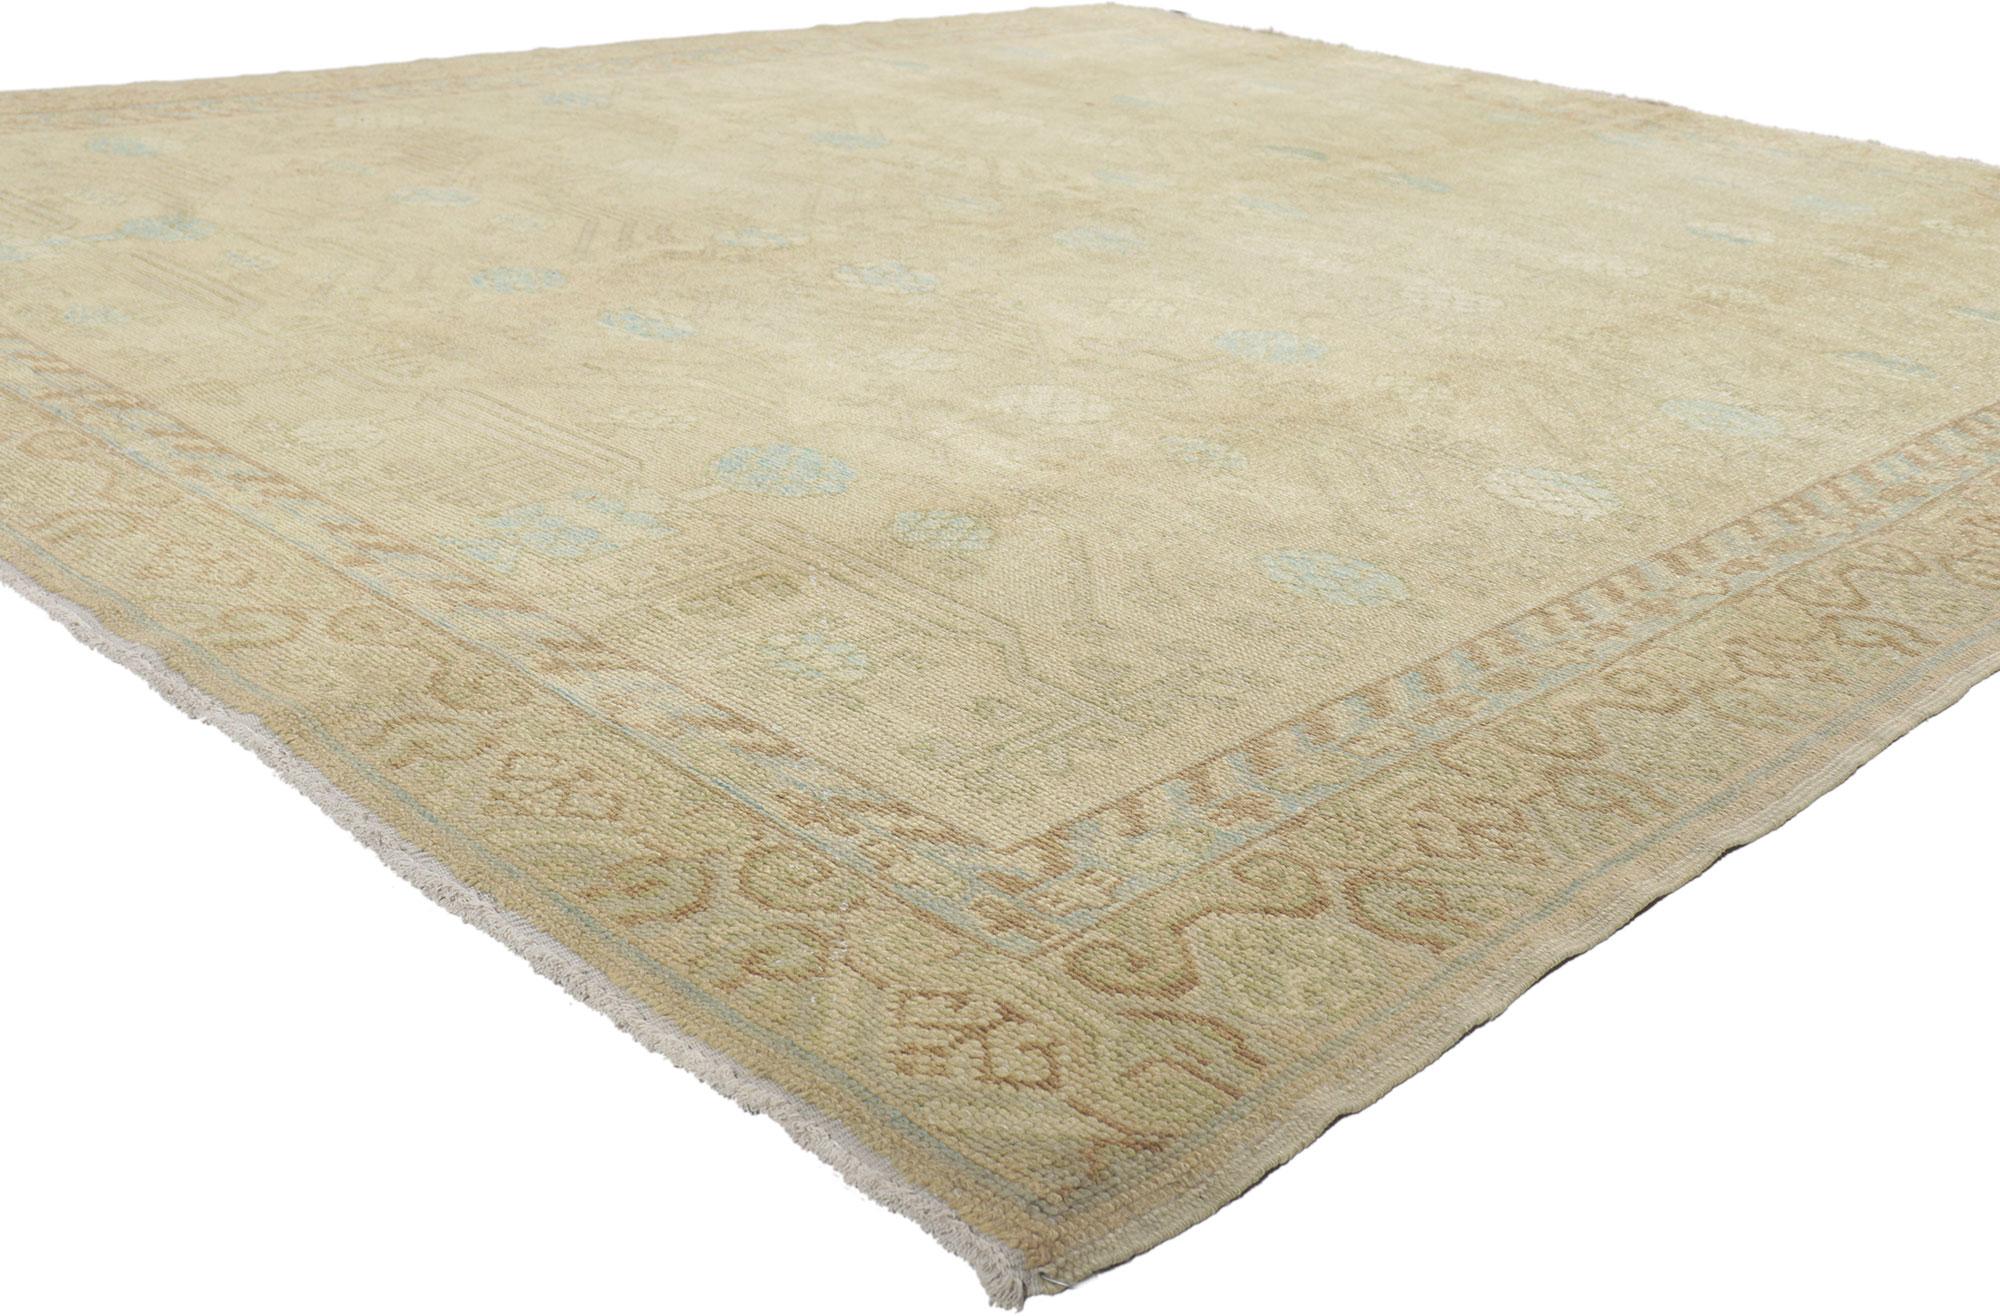 51624 New Soft Earth-Tone Turkish Khotan Rug, 08'06 x 09'07. 
Dieser türkische Khotan-Teppich aus handgeknüpfter Wolle besticht durch seinen zeitlosen Stil und seine unglaubliche Detailtreue und Textur und ist eine fesselnde Vision gewebter